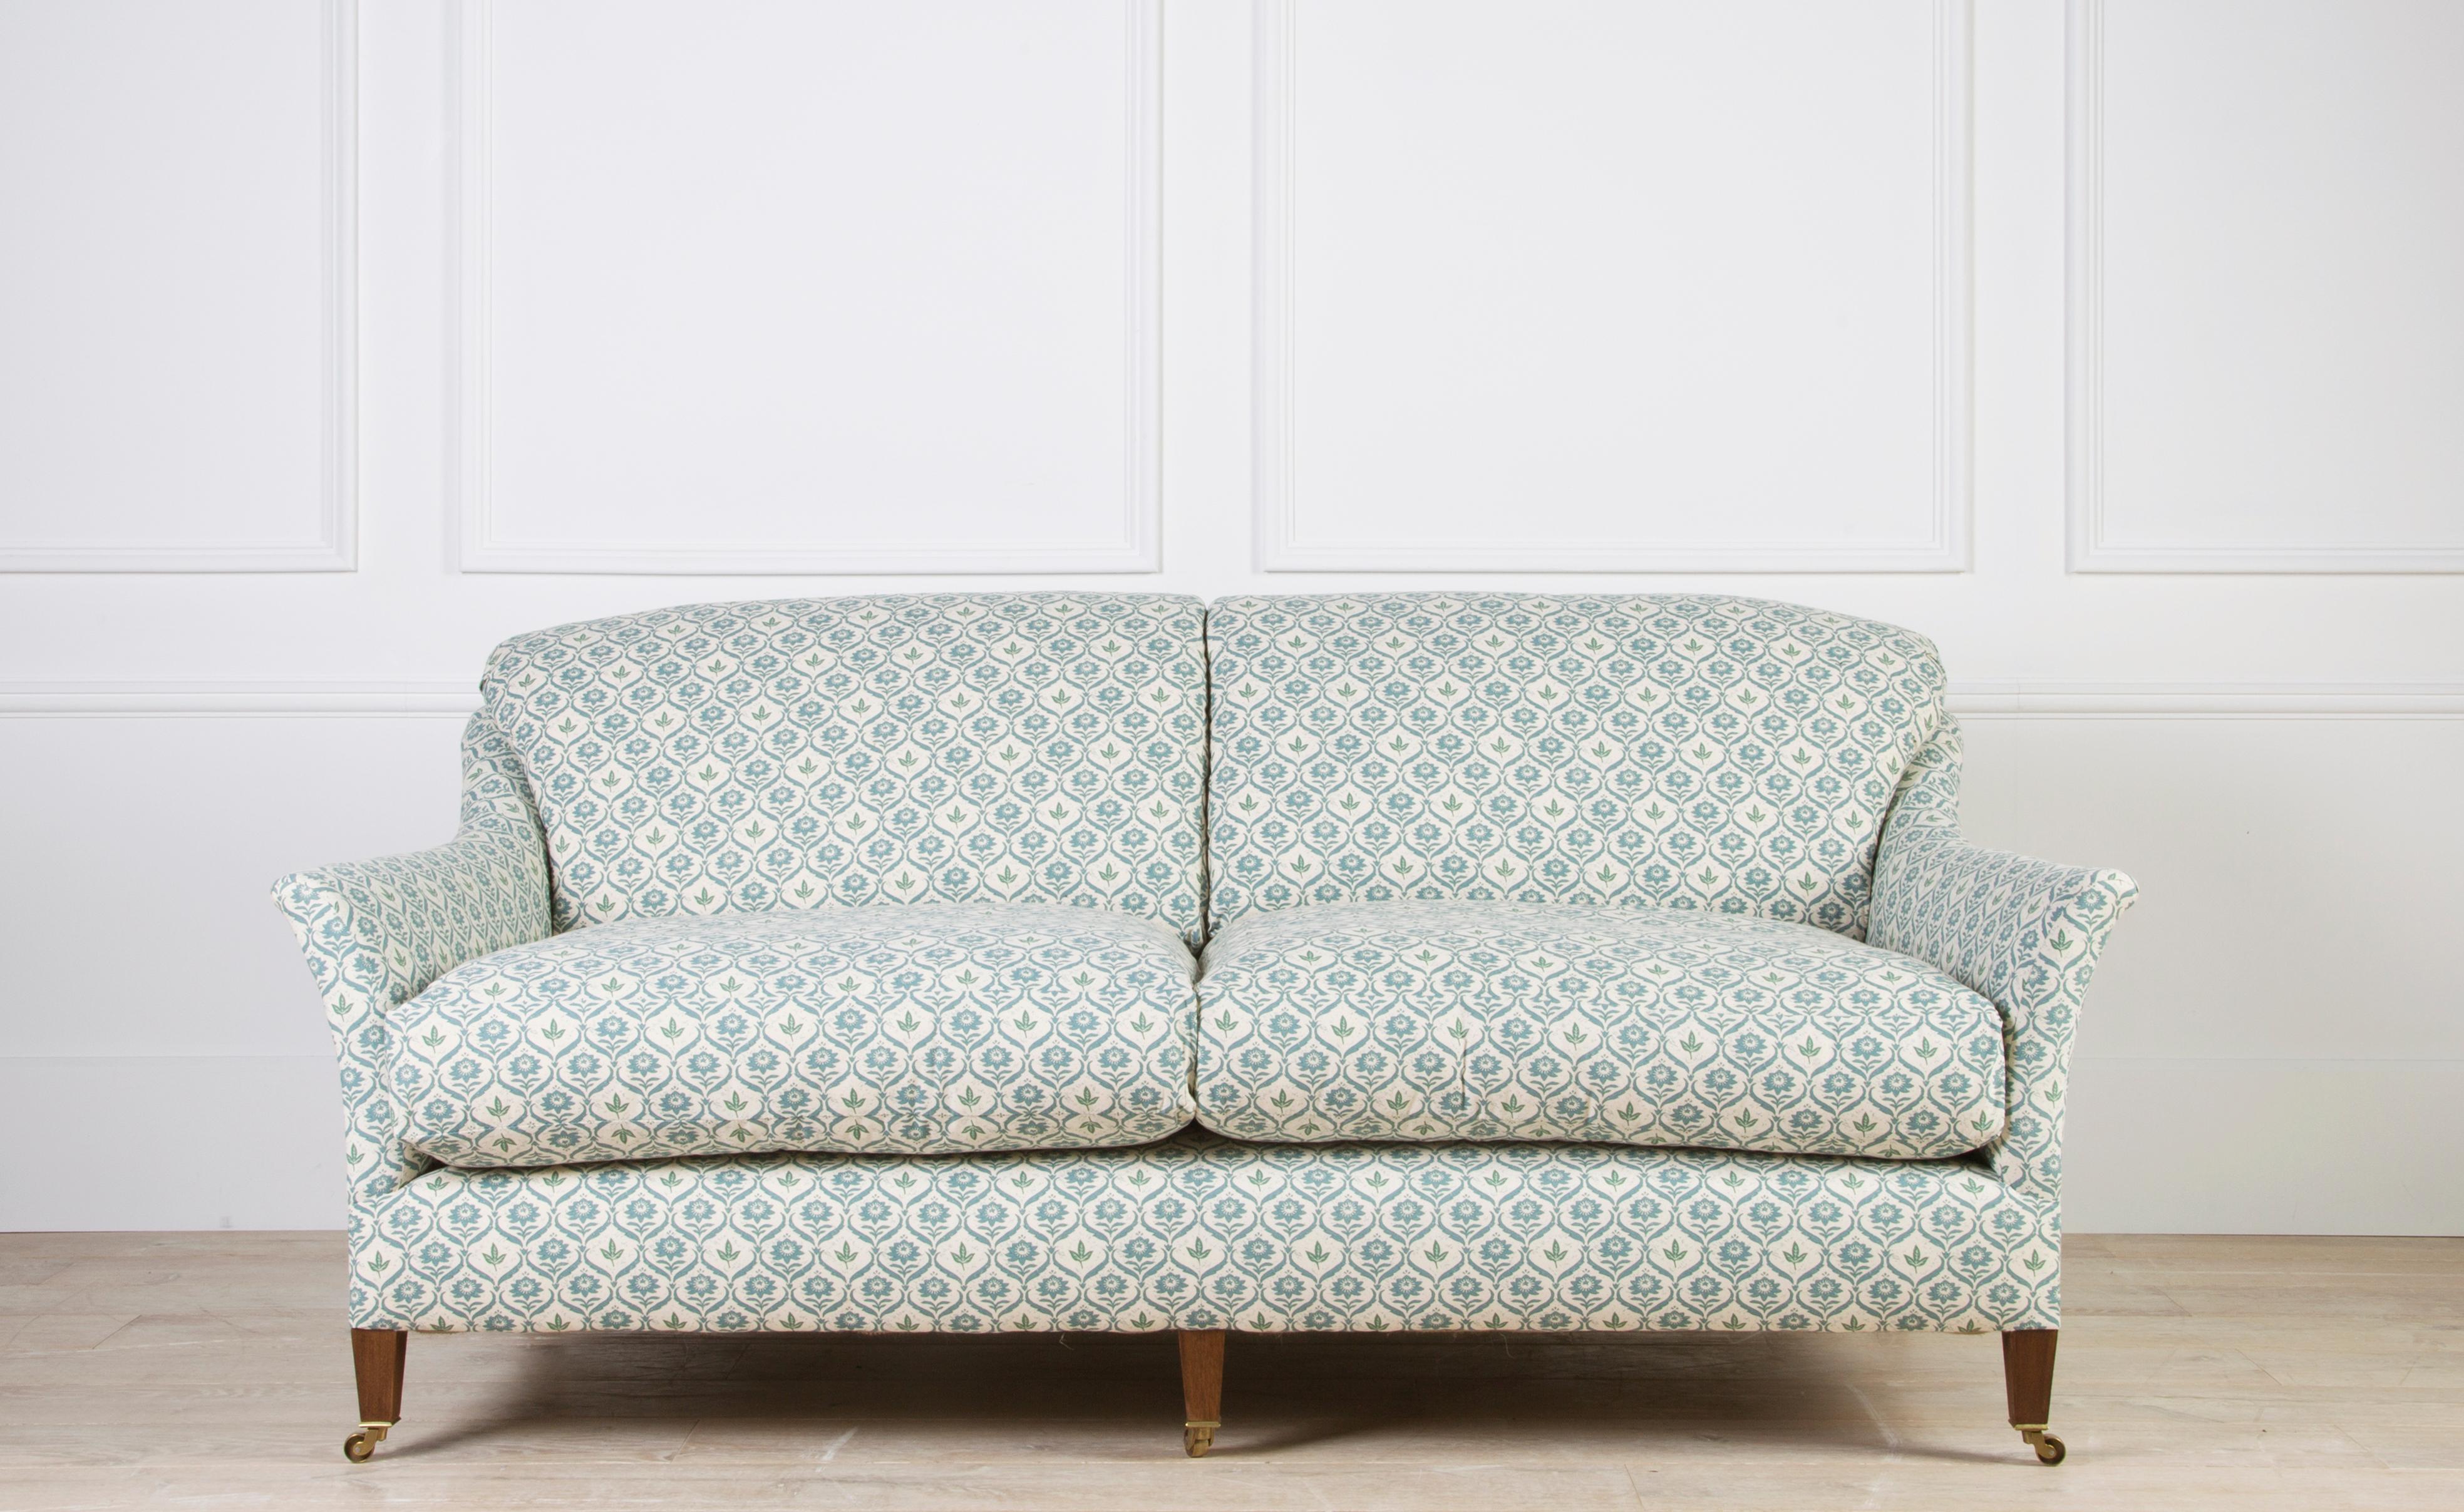 Ce canapé est une variante de notre très populaire modèle Elmstead. Cette version est dotée d'un coussin dorsal intégral, ou 